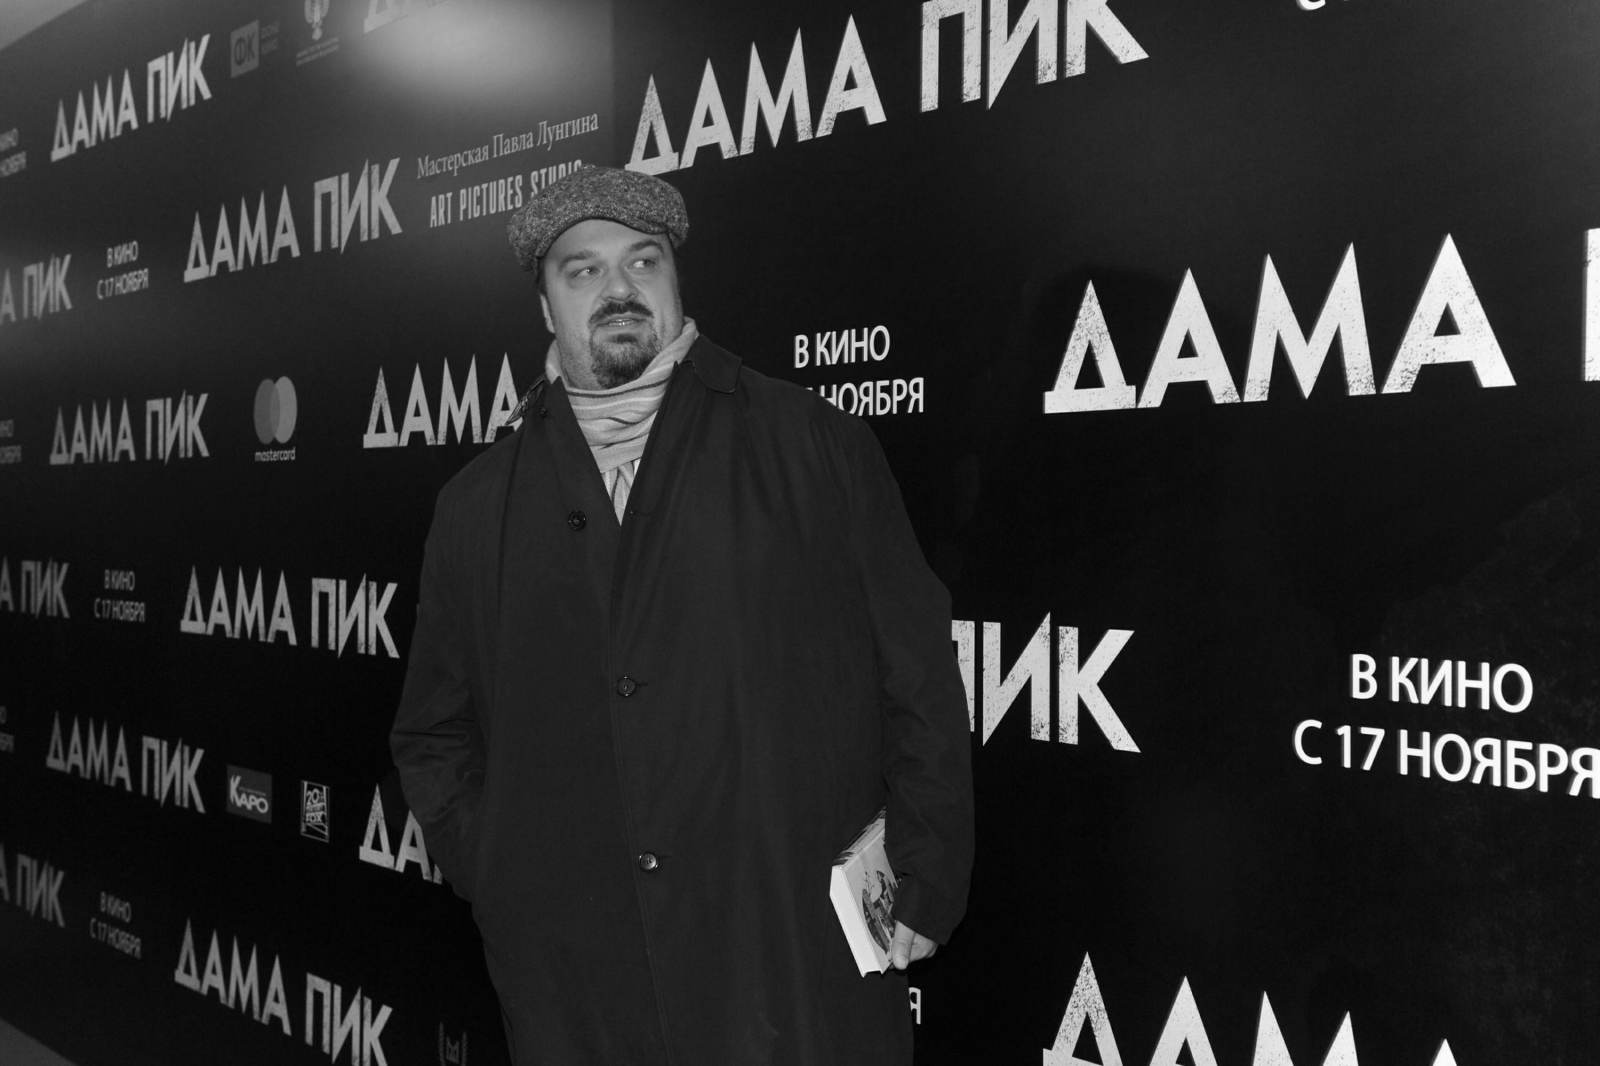 Гаджиев вспомнил историю, как Василий Уткин предлагал ему работать экспертом на телевидении